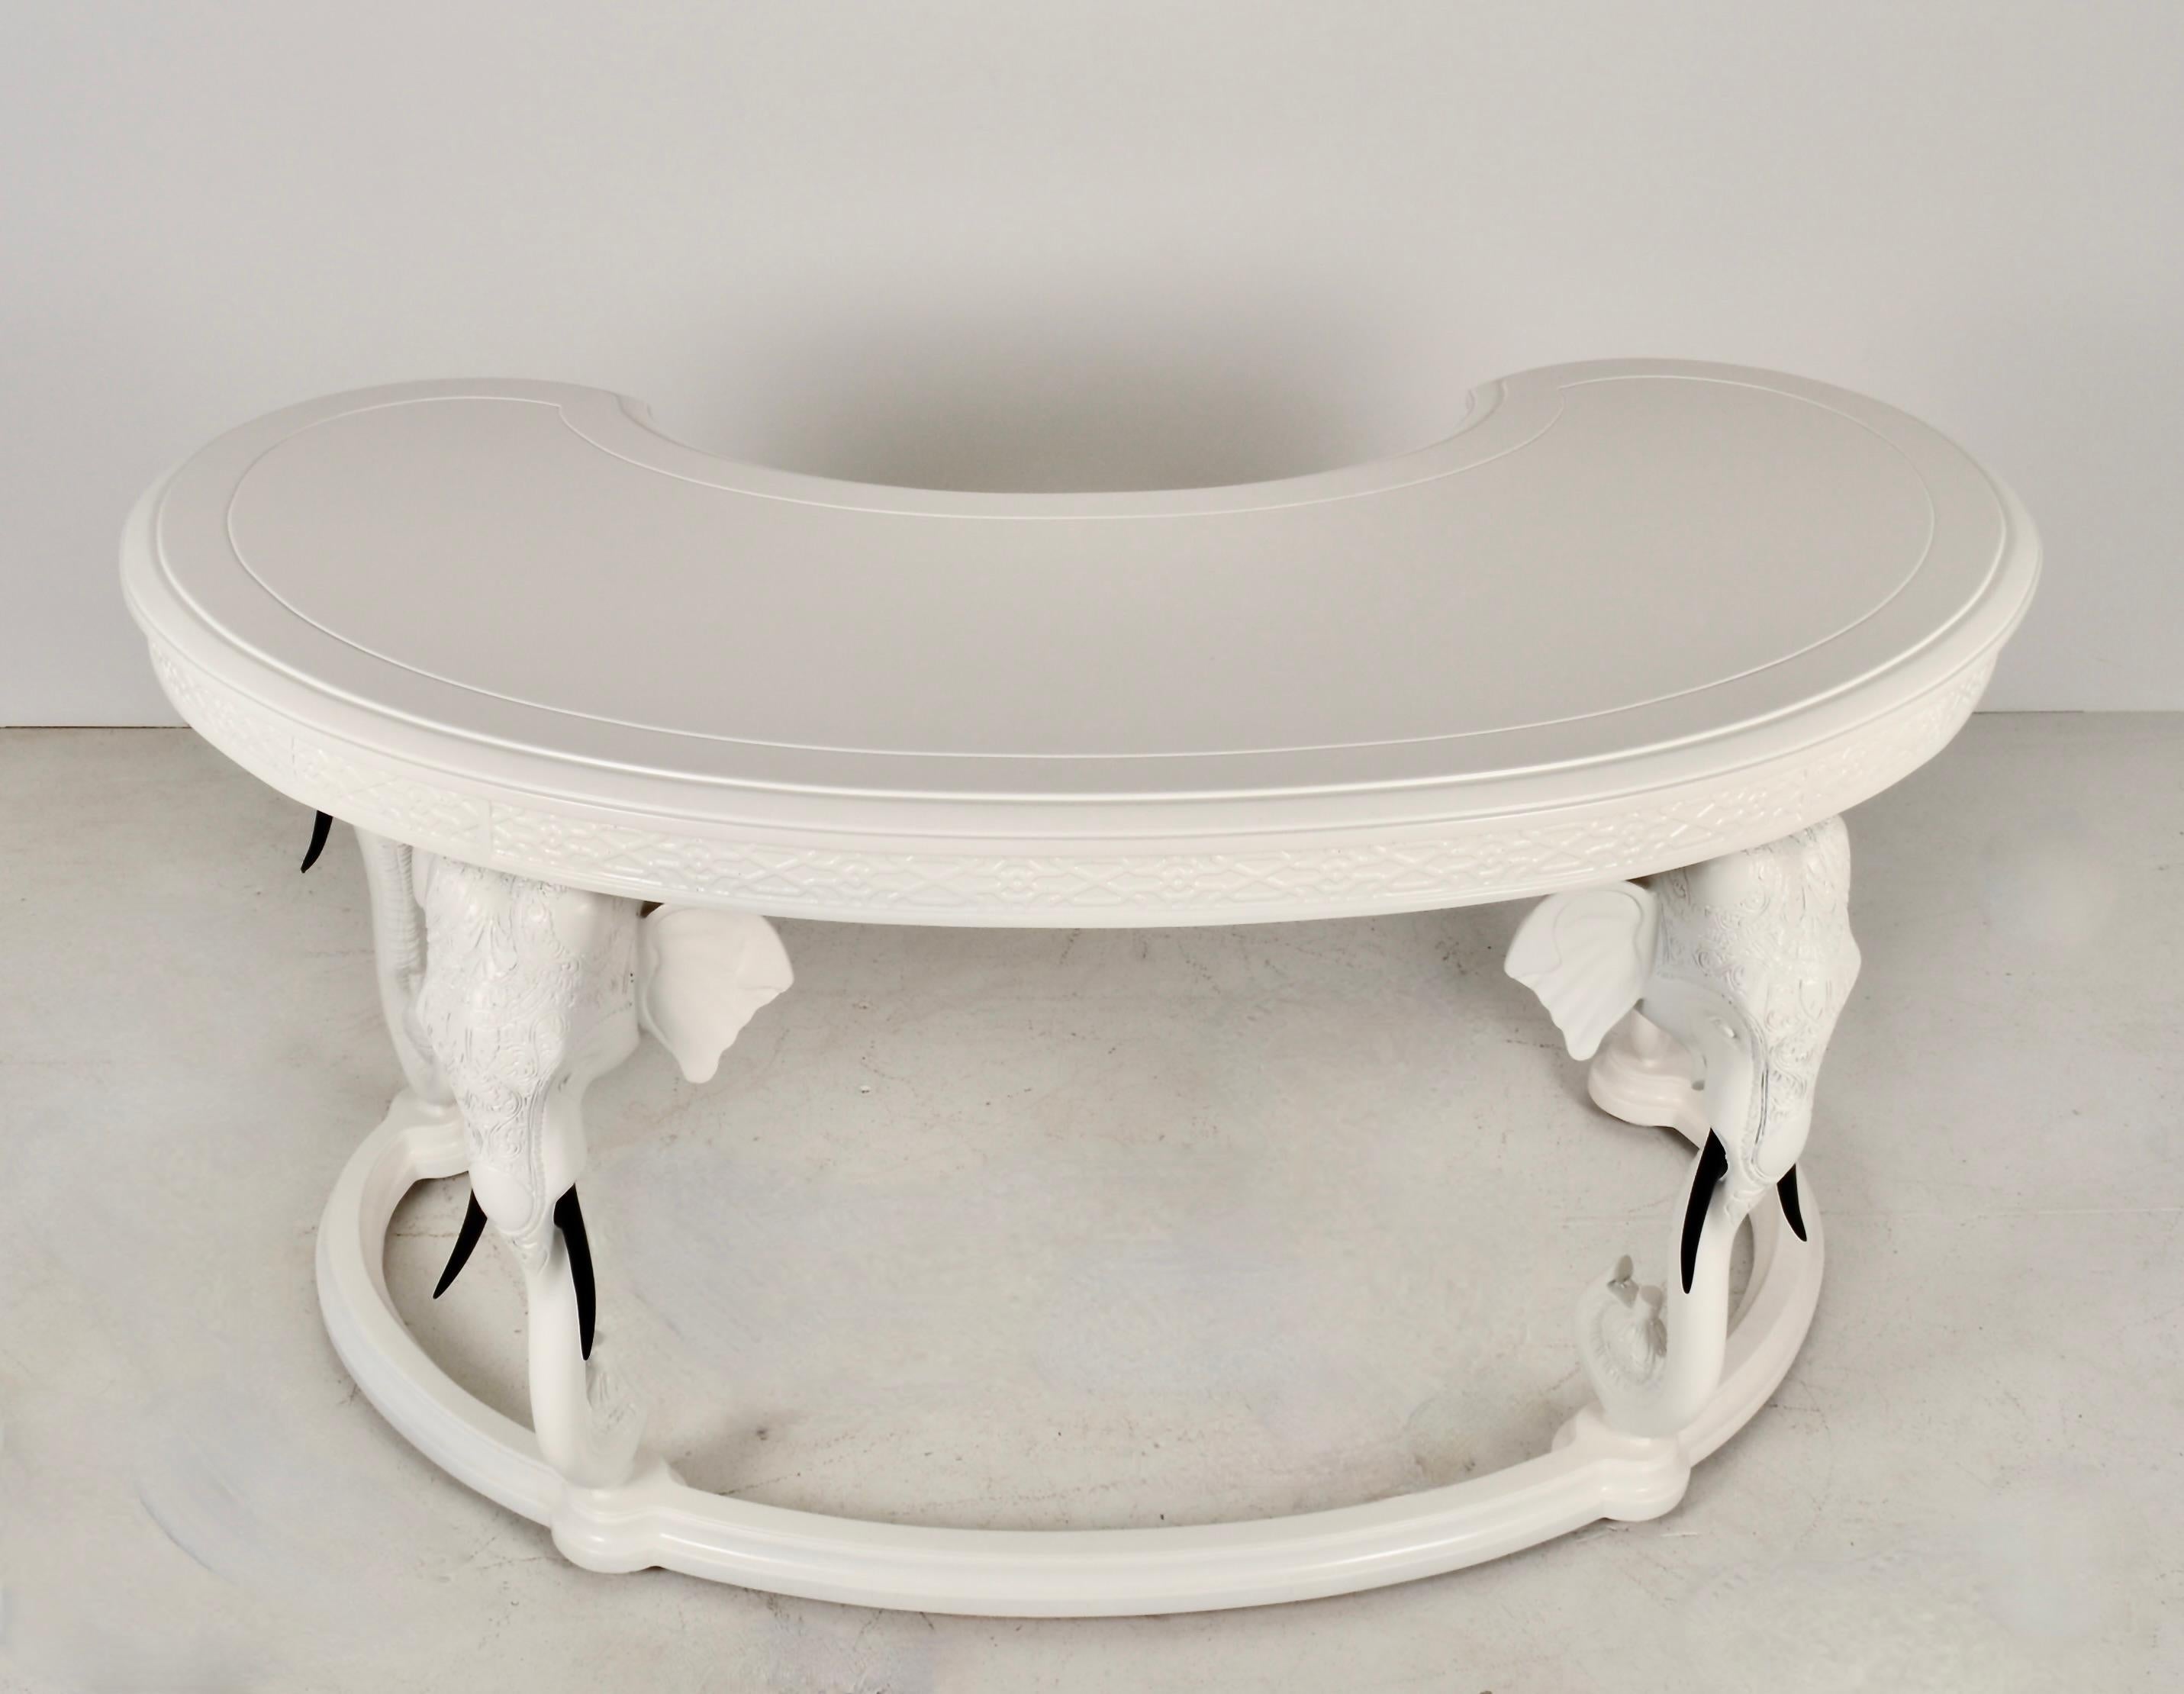 Gampel-Stoll-Möbel sind das Nonplusultra an skurrilen, exotischen Themenmöbeln. Dieser Schreibtisch ist vielleicht ihr ikonischstes Design, das vier Elefantenköpfe zeigt, die eine nierenförmige Arbeitsfläche halten. Der Schreibtisch verfügt über